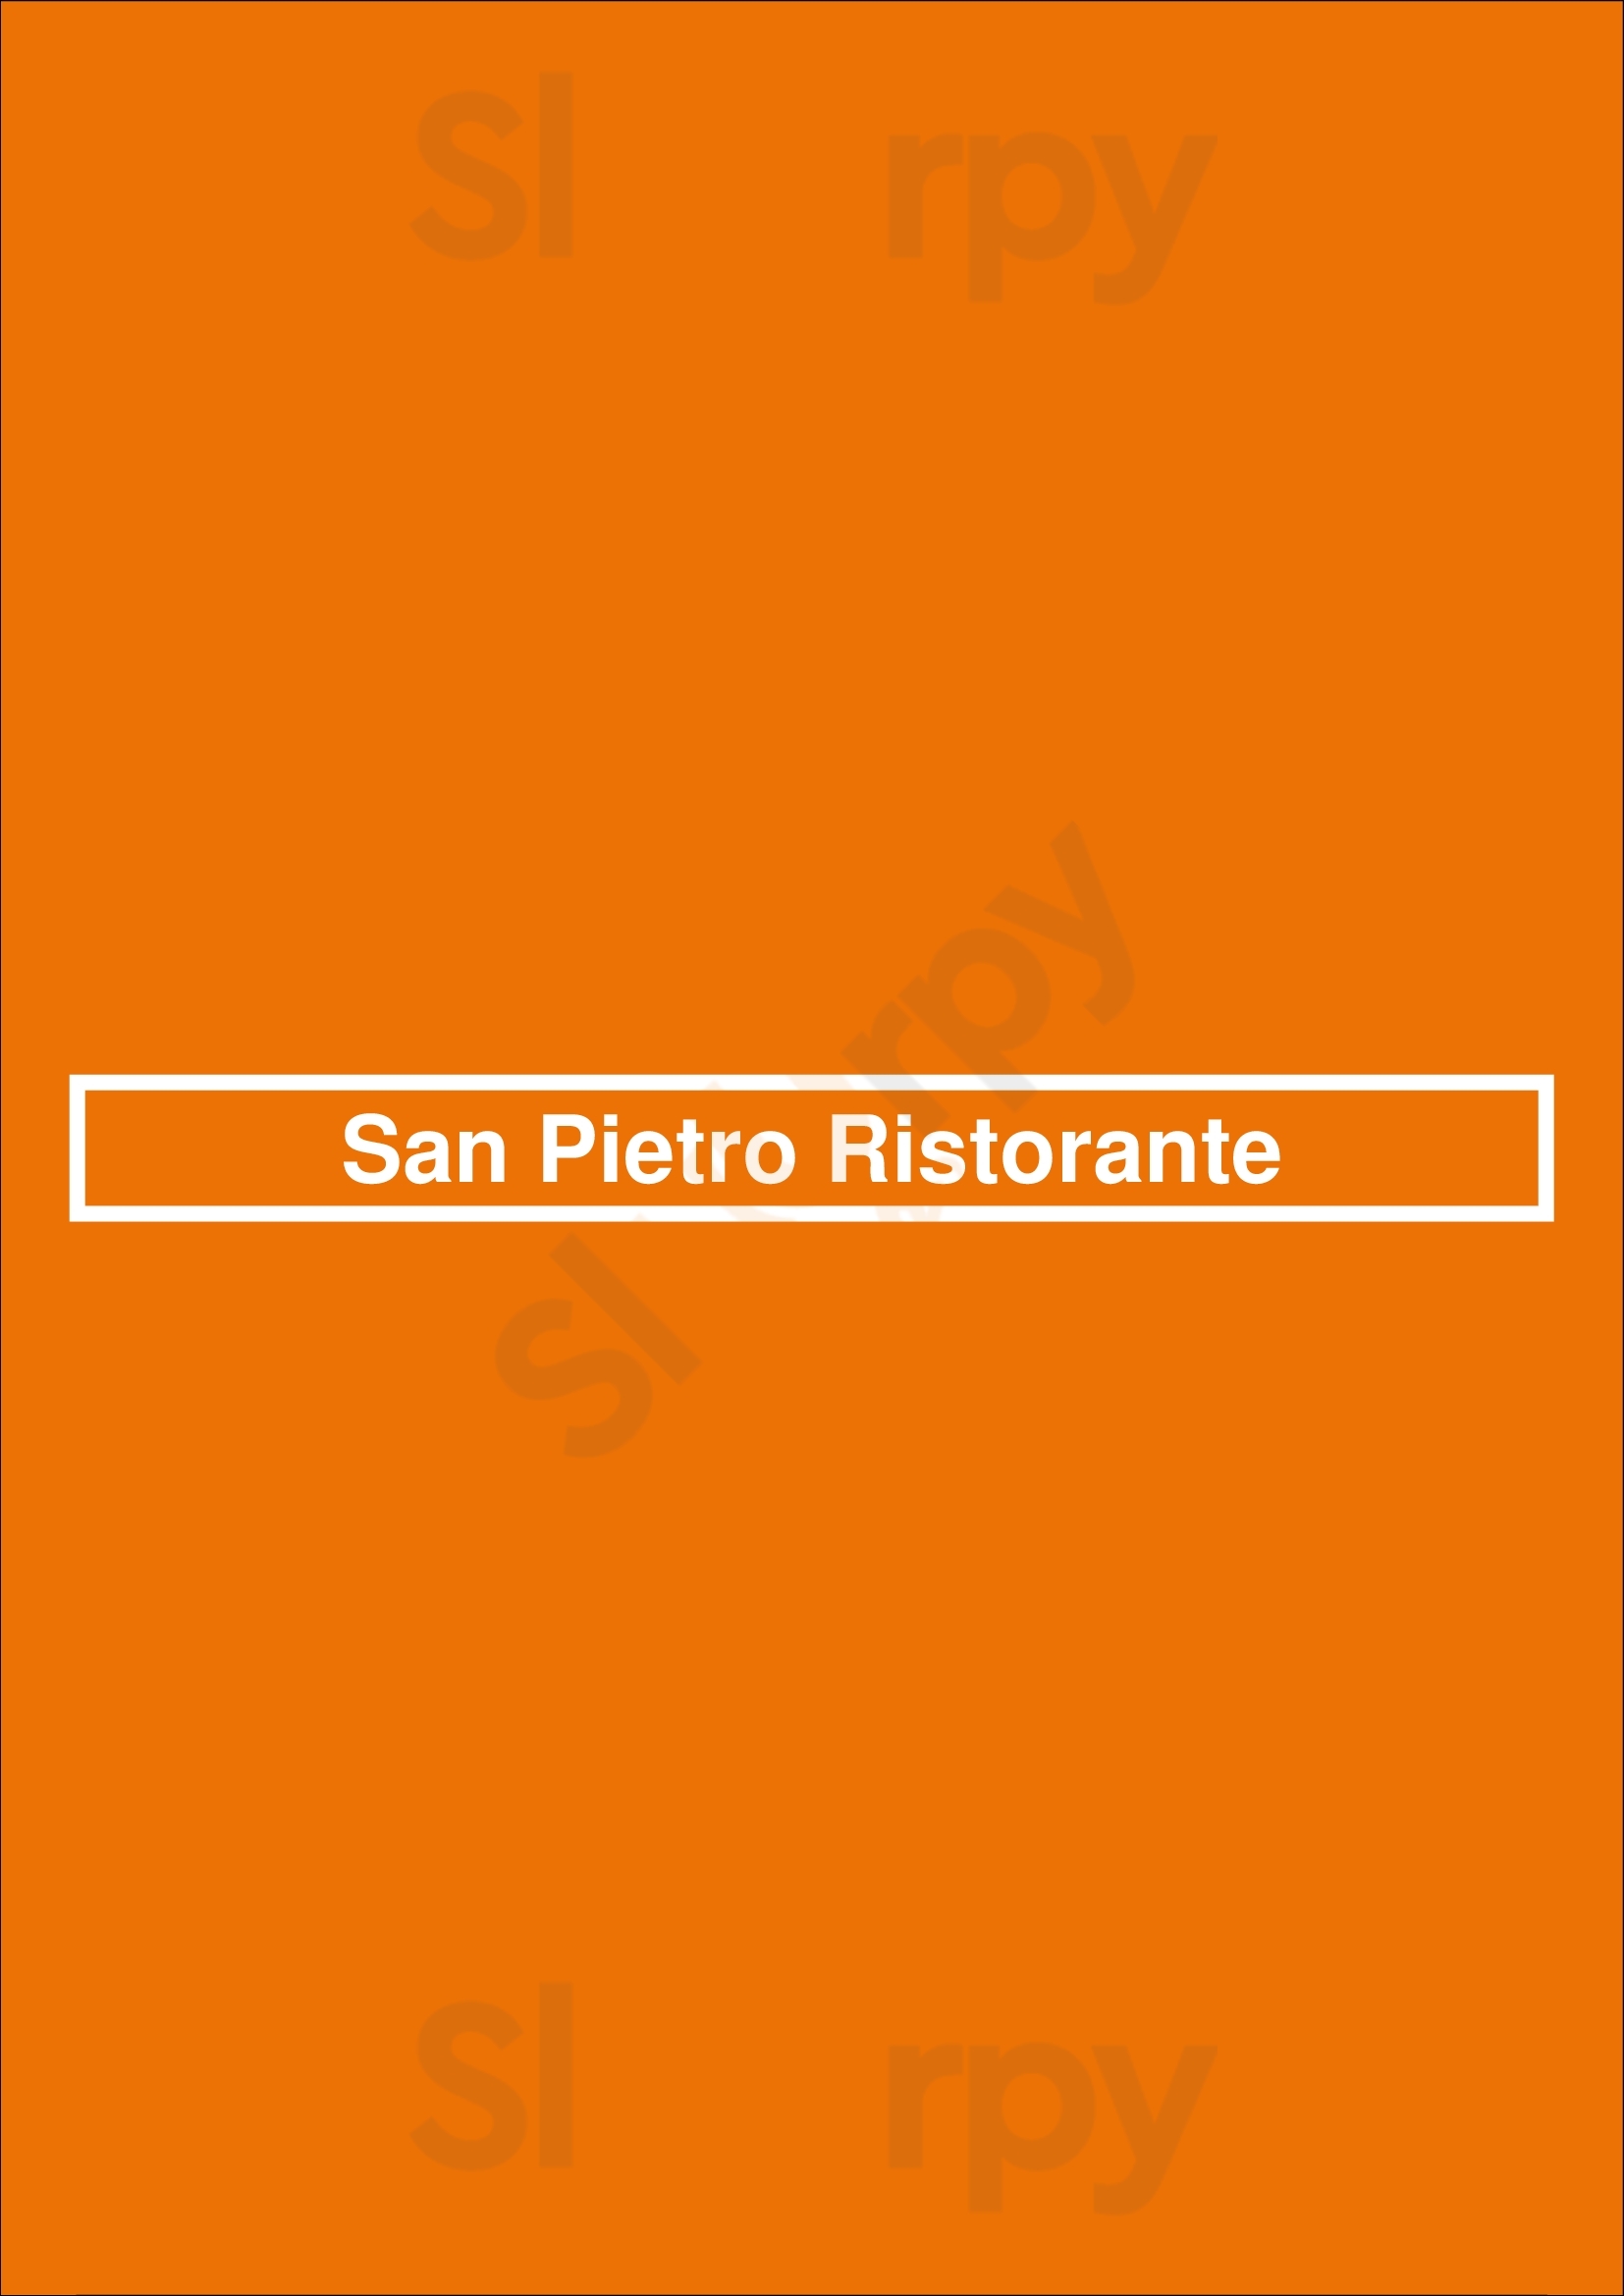 San Pietro Ristorante New York City Menu - 1